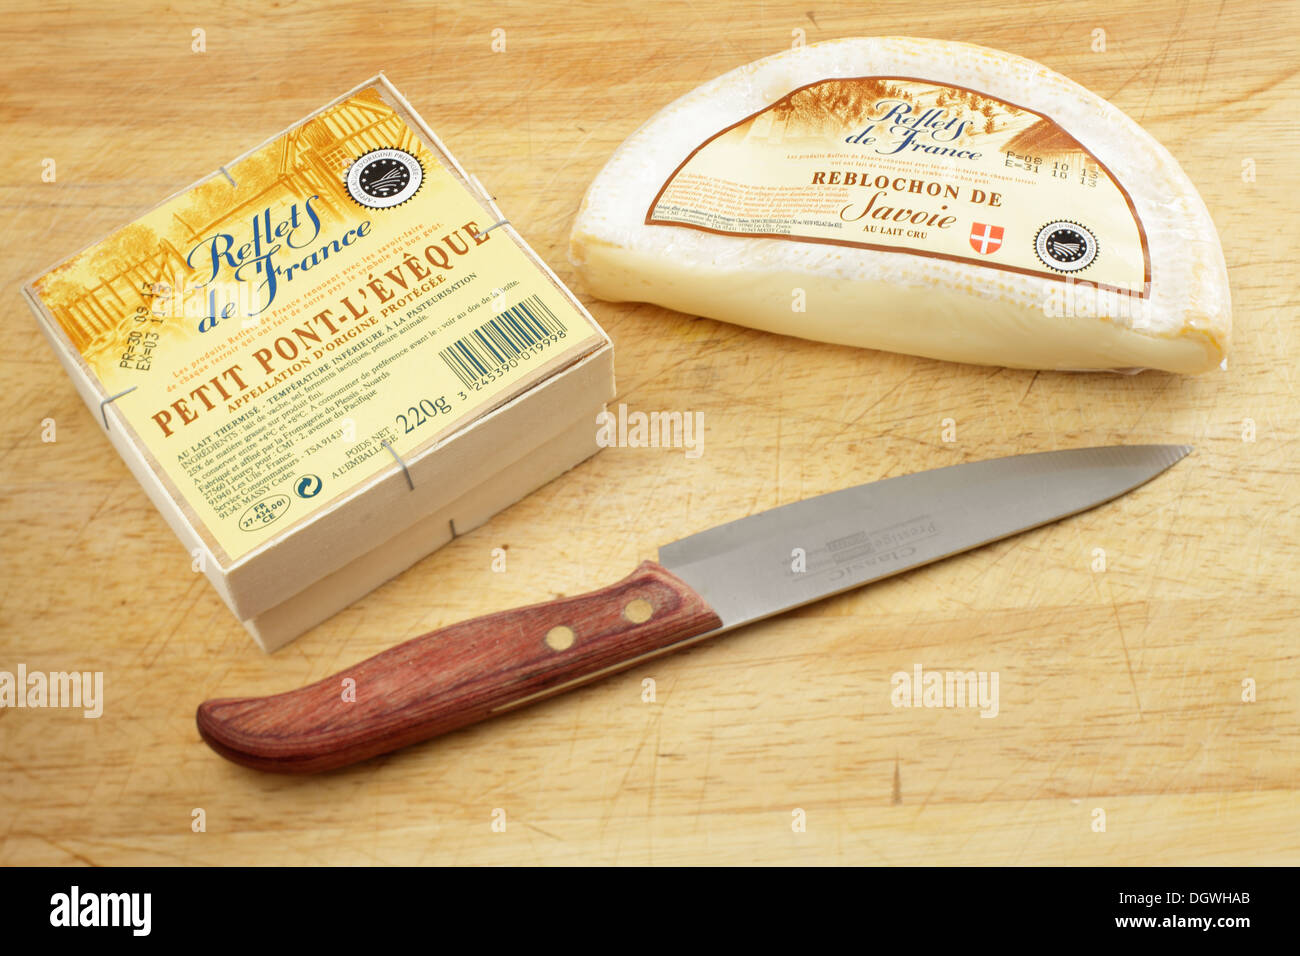 Französischer Käse Petit Pont-l'eveque und Reblochon de Savoie von Carrefour Reflets de France Palette traditioneller Lebensmittel Stockfoto